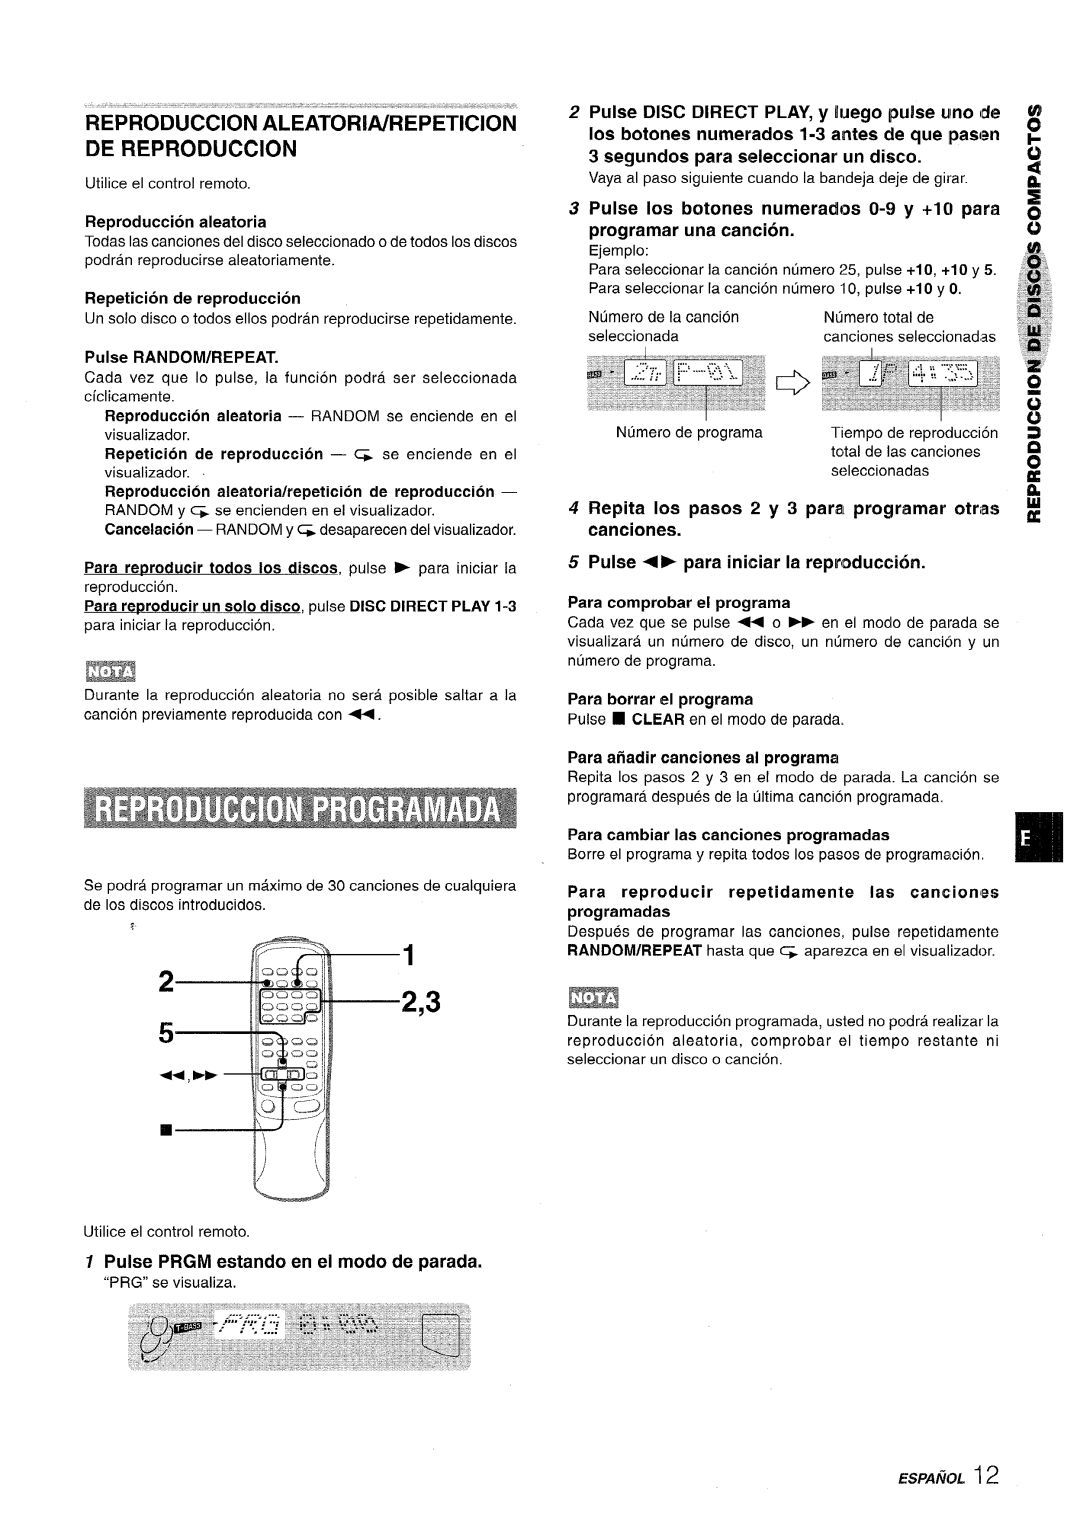 Sony SX-MT321 manual REPRODUCCION”ALEATORltiRE’PETICION DE REPRODUCTION, Pulse PRGM estando en el modo de parada, segundos 